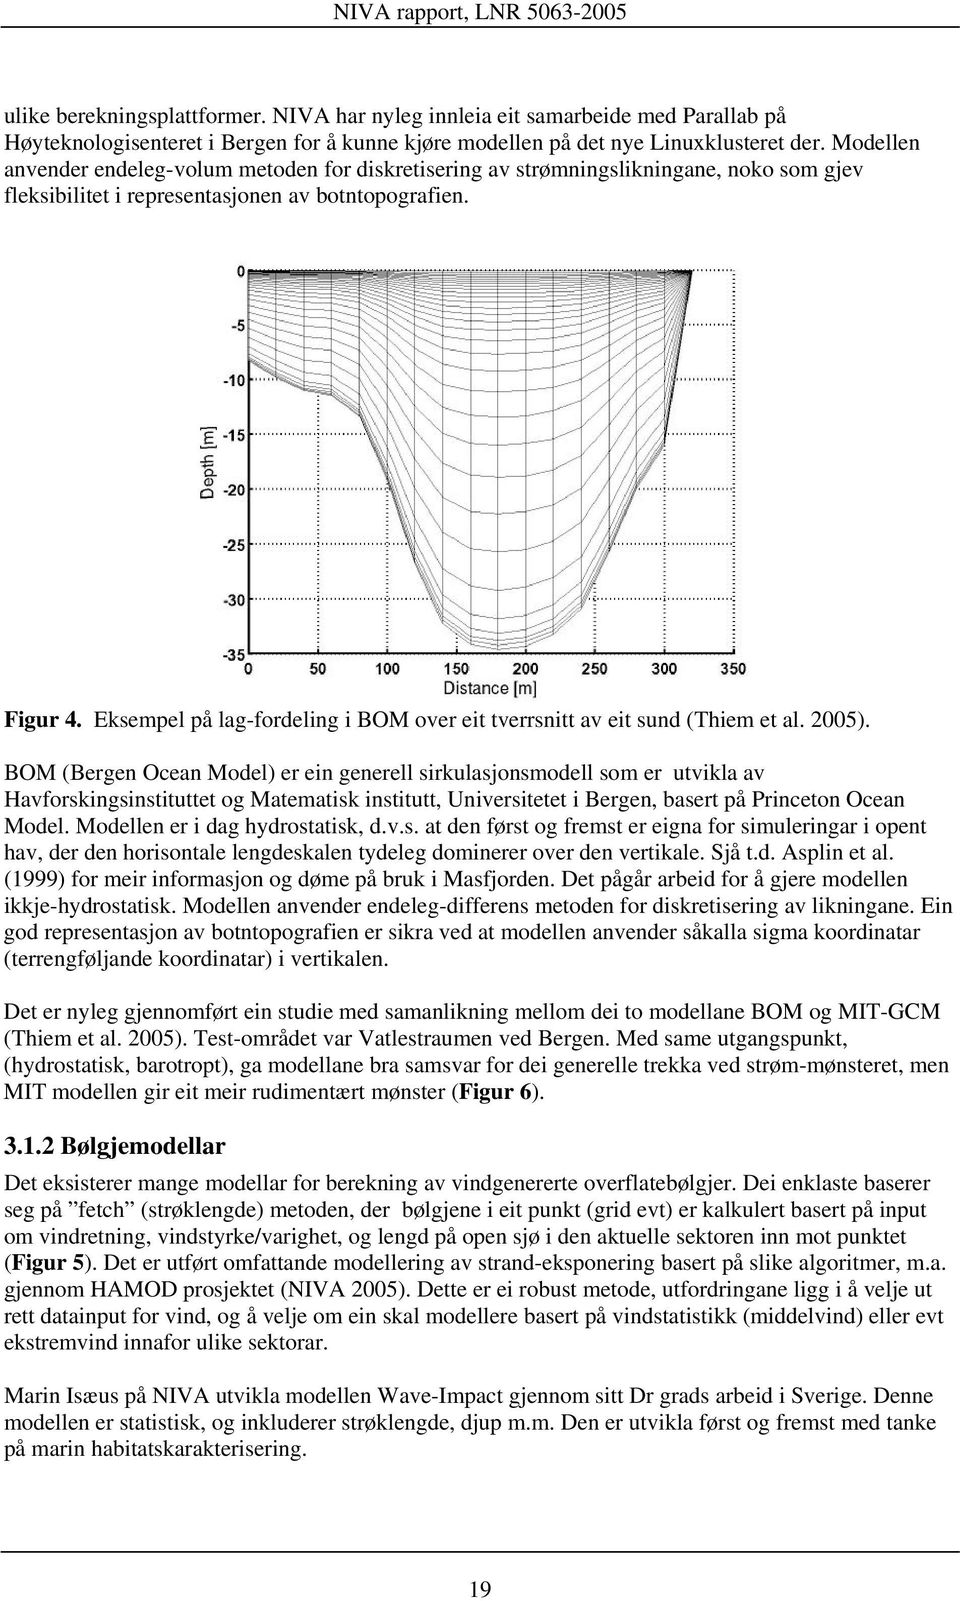 Eksempel på lag-fordeling i BOM over eit tverrsnitt av eit sund (Thiem et al. 2005).